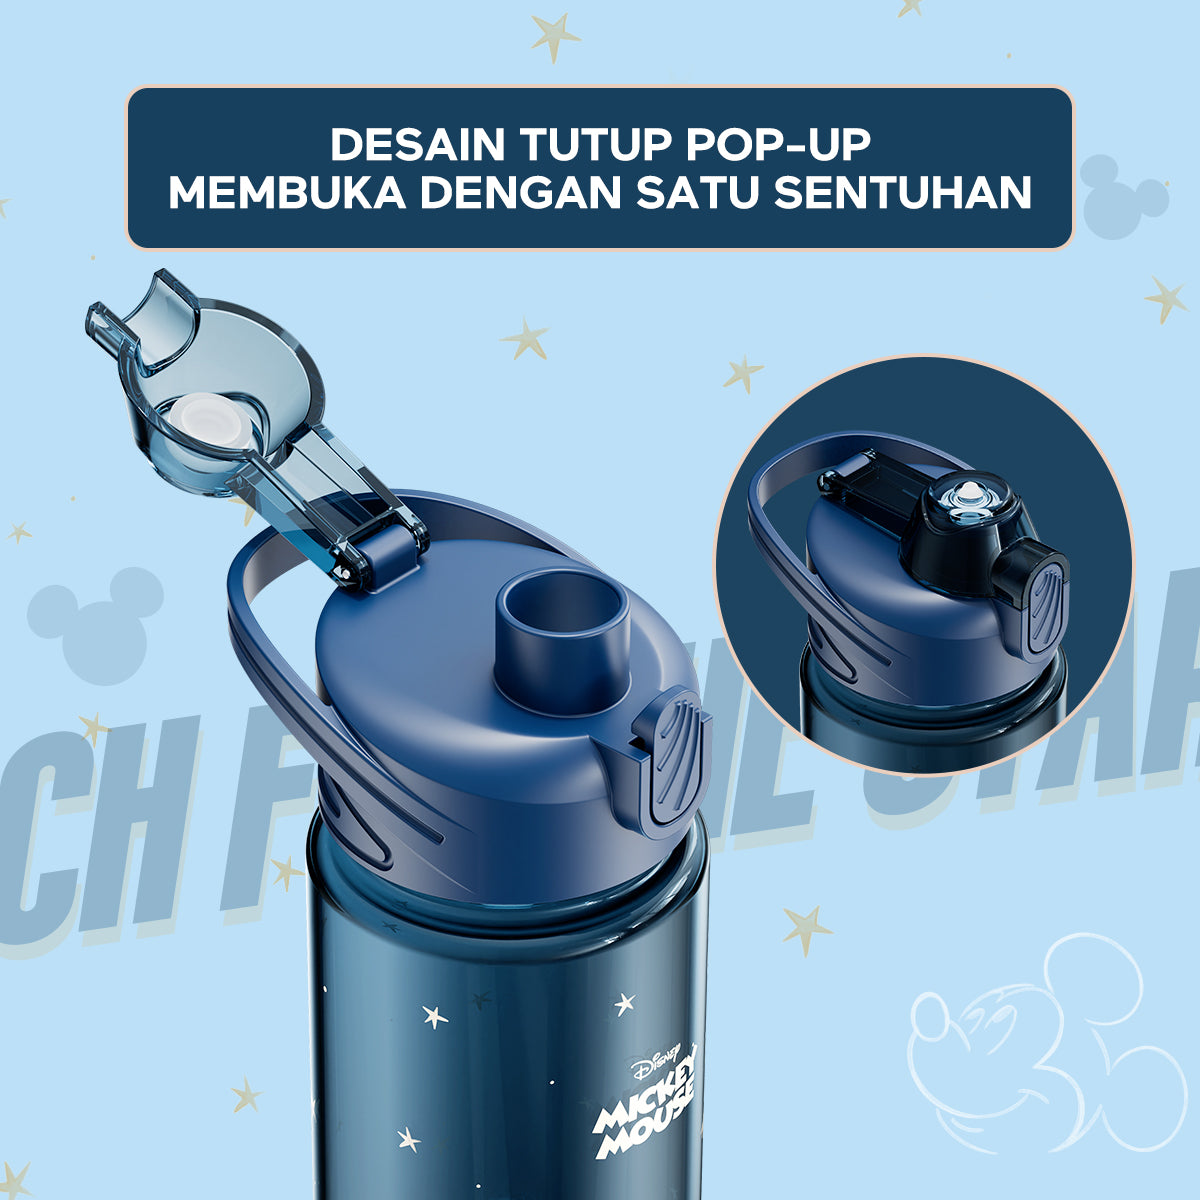 Pemesanan Awal!🌟ecentio Disney botol minum 1000ml Portable Water Tumbler Botol 1 Liter